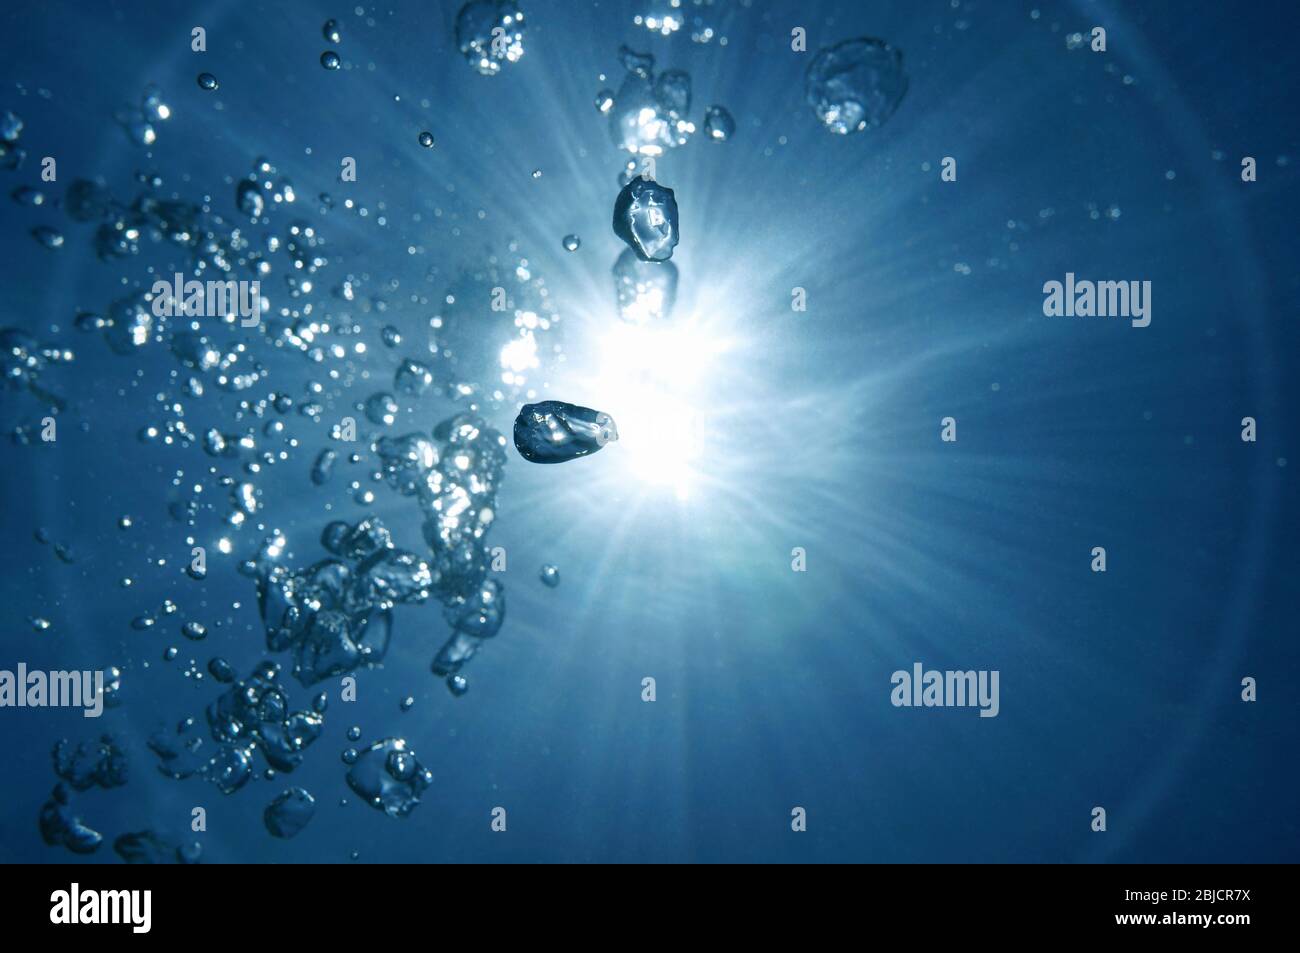 Lumière du soleil avec bulles d'air sous l'eau, scène naturelle, océan Pacifique Banque D'Images